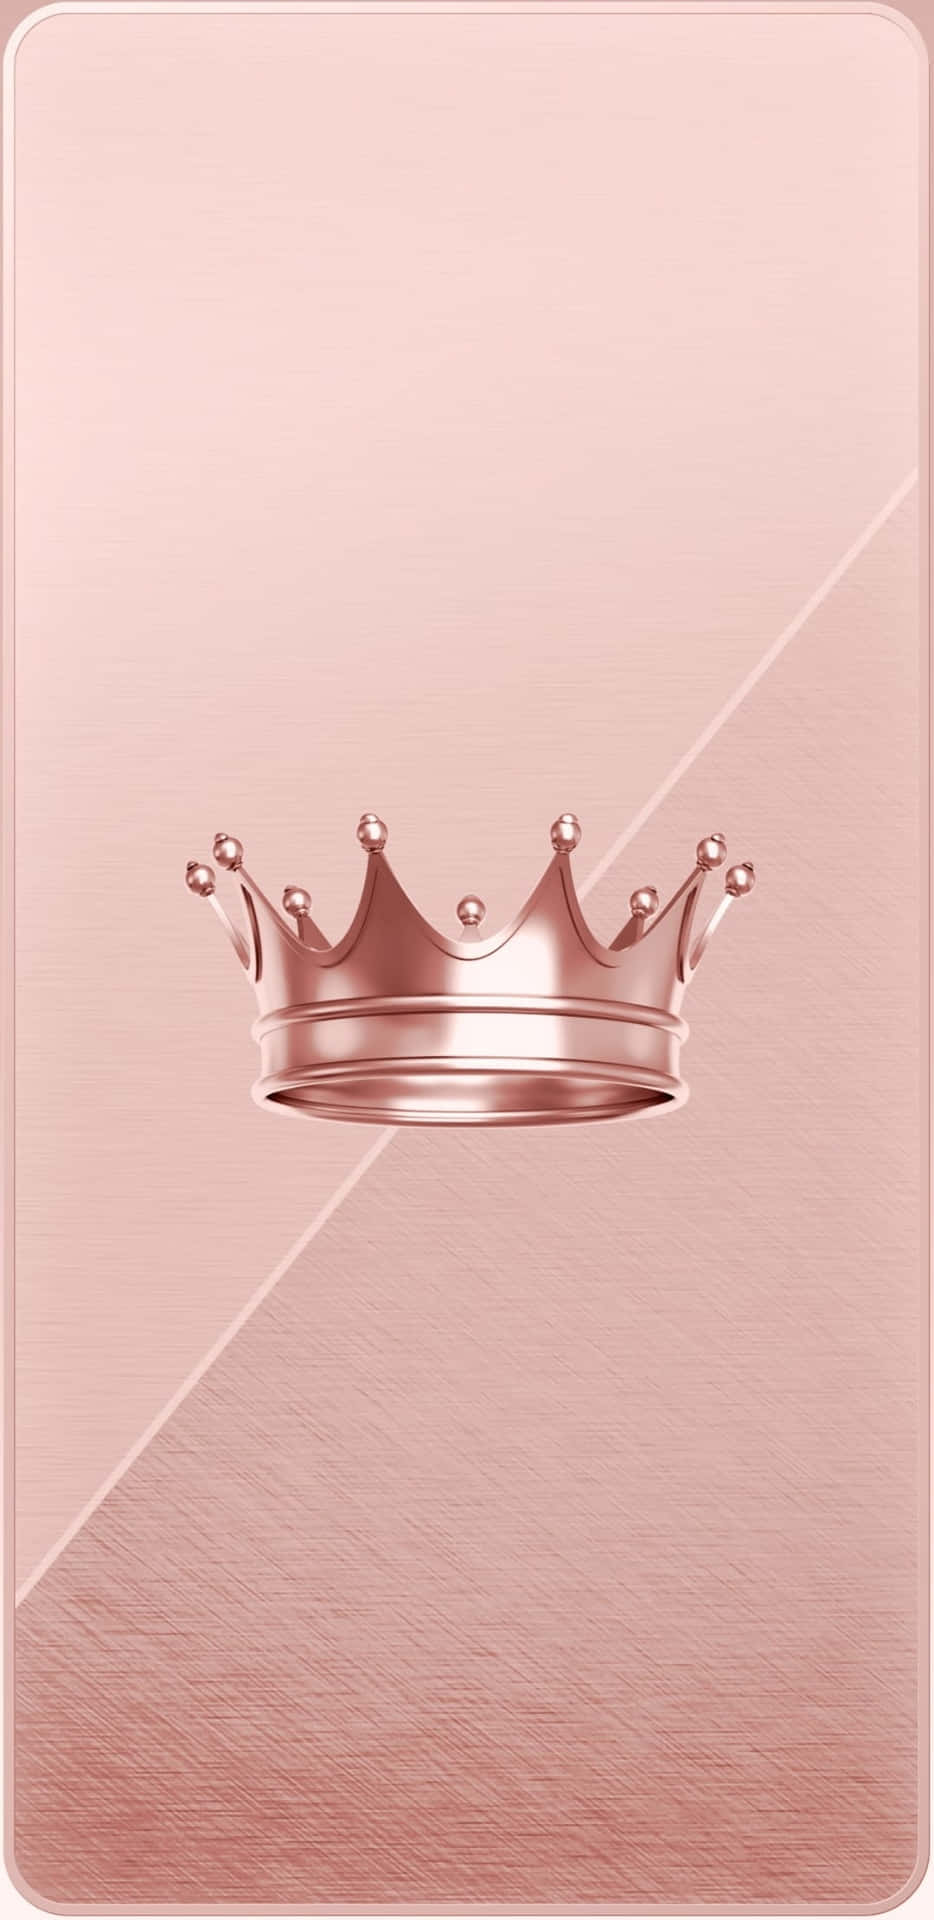 Dekoreradmed En Majestätisk Krona, Strålar Prinsessan Av Äkta Skönhet. Wallpaper